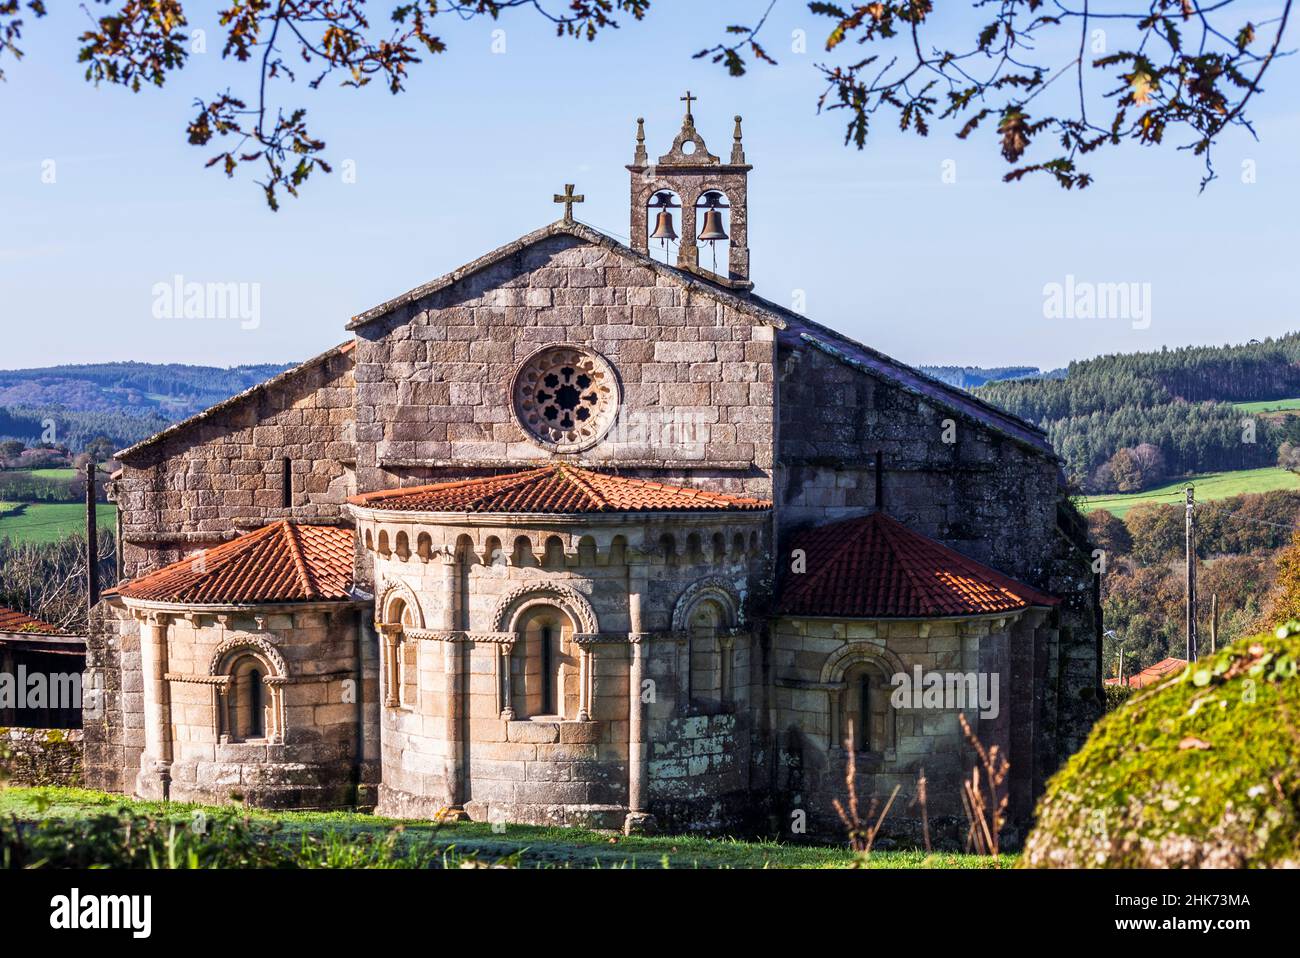 Iglesia románica de Santa María de Mezonzo. Vilasantar. La Coruña. Galicia. España Stock Photo